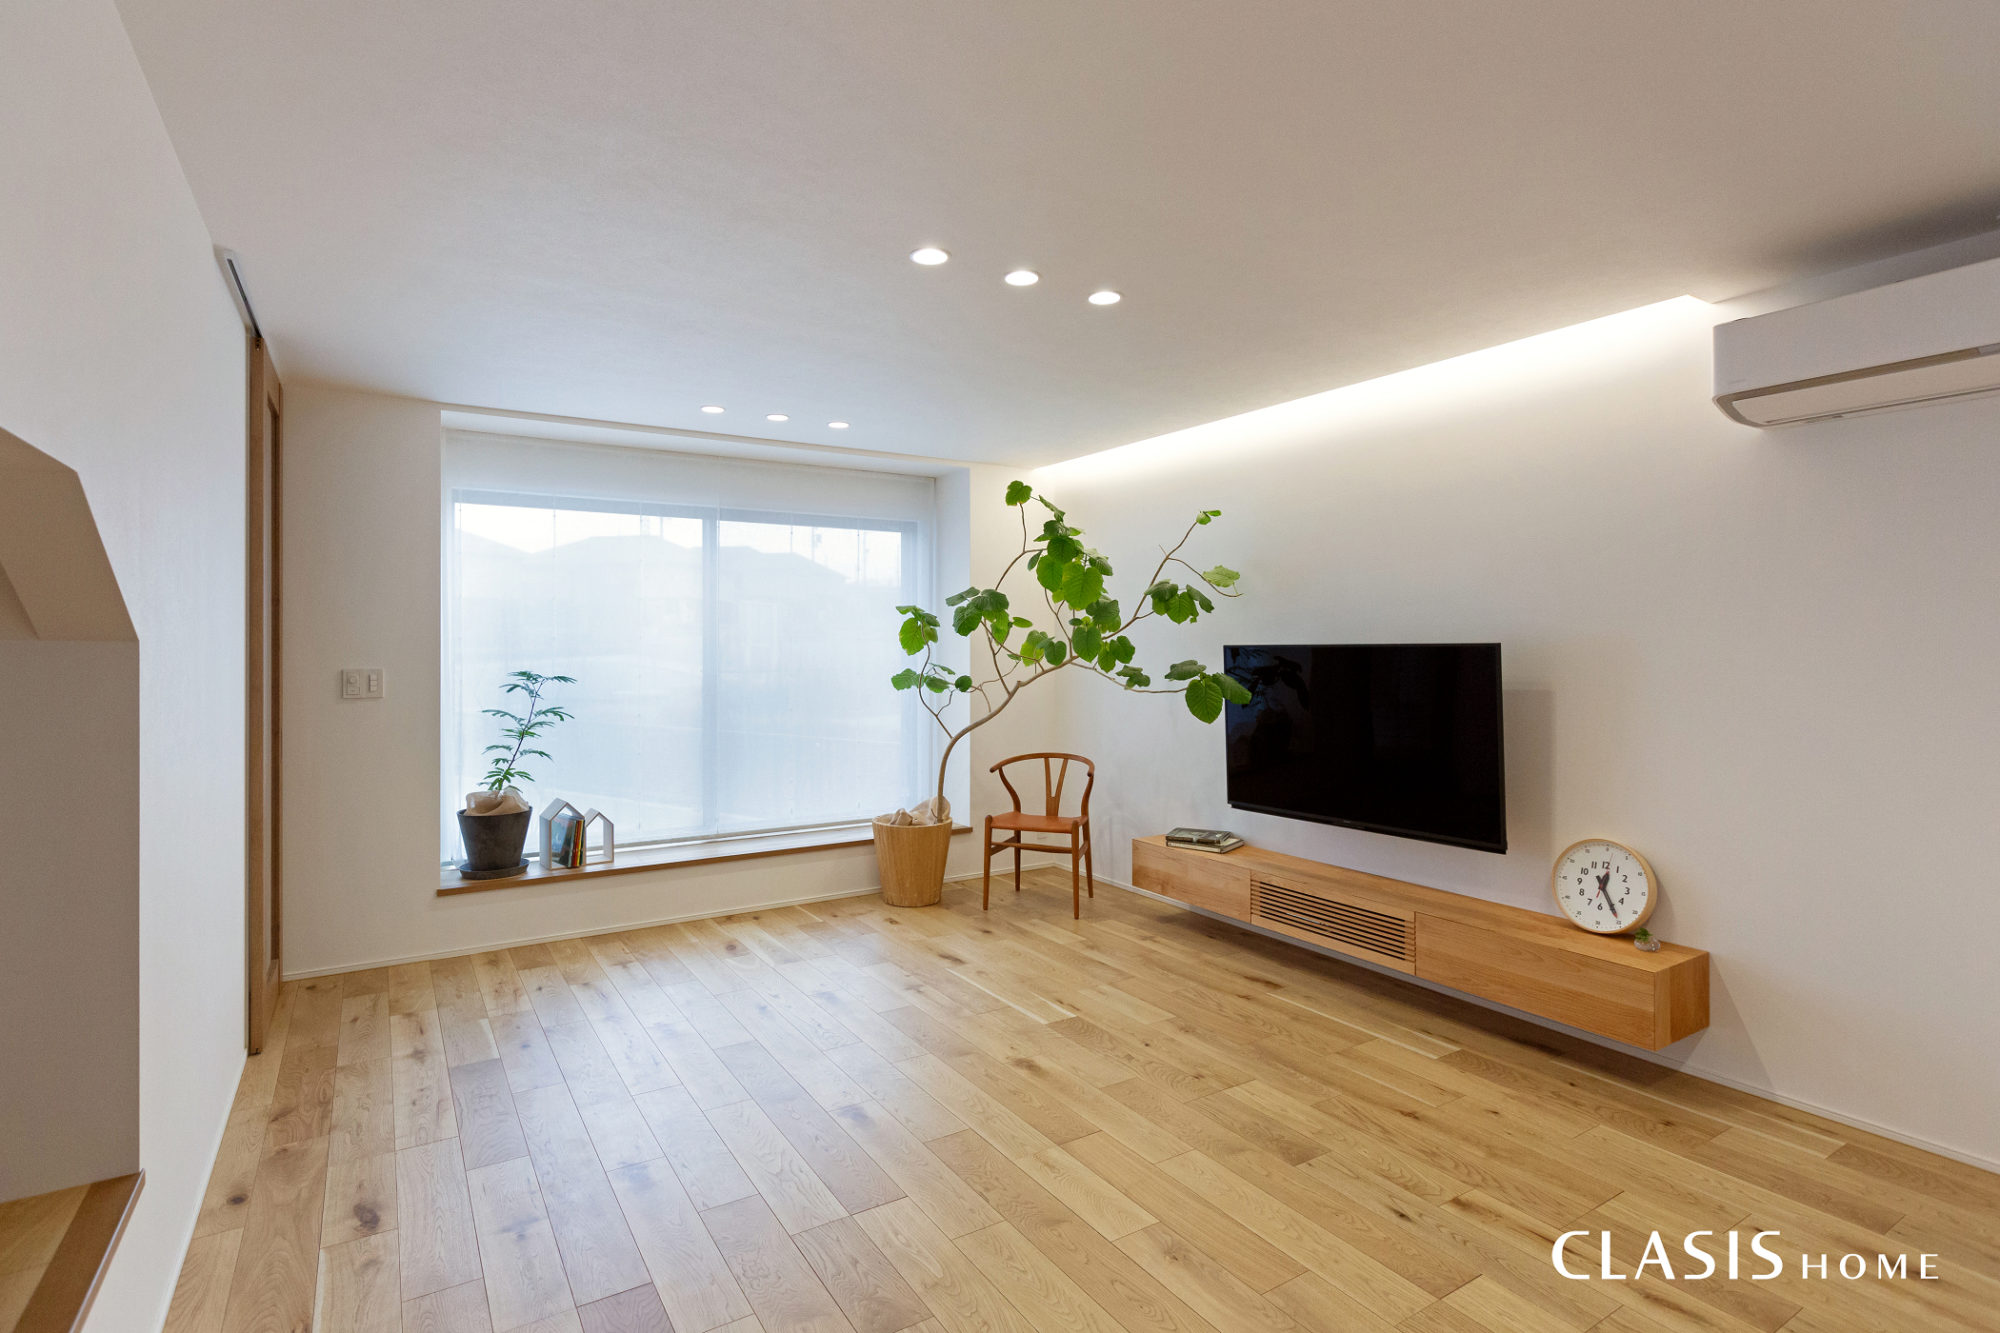 白い壁と木目の床がシンプルでスッキリとしたリビング。シンプルだからこそ、間接照明が良く映えます。